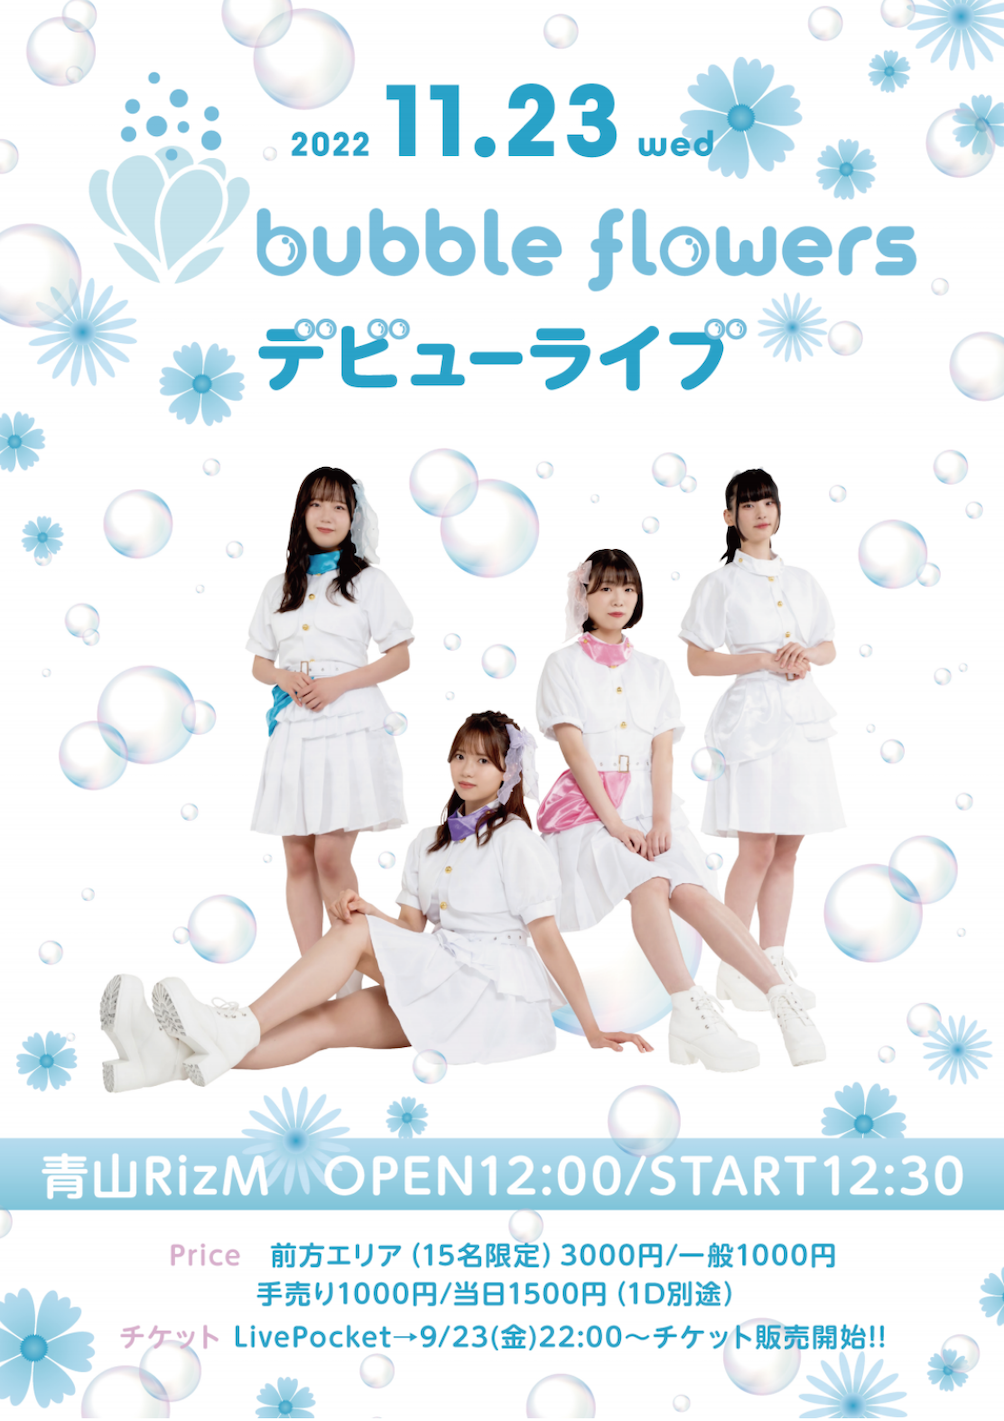 2022/11/23(水祝)『bubble flowersデビューライブ』青山RizM